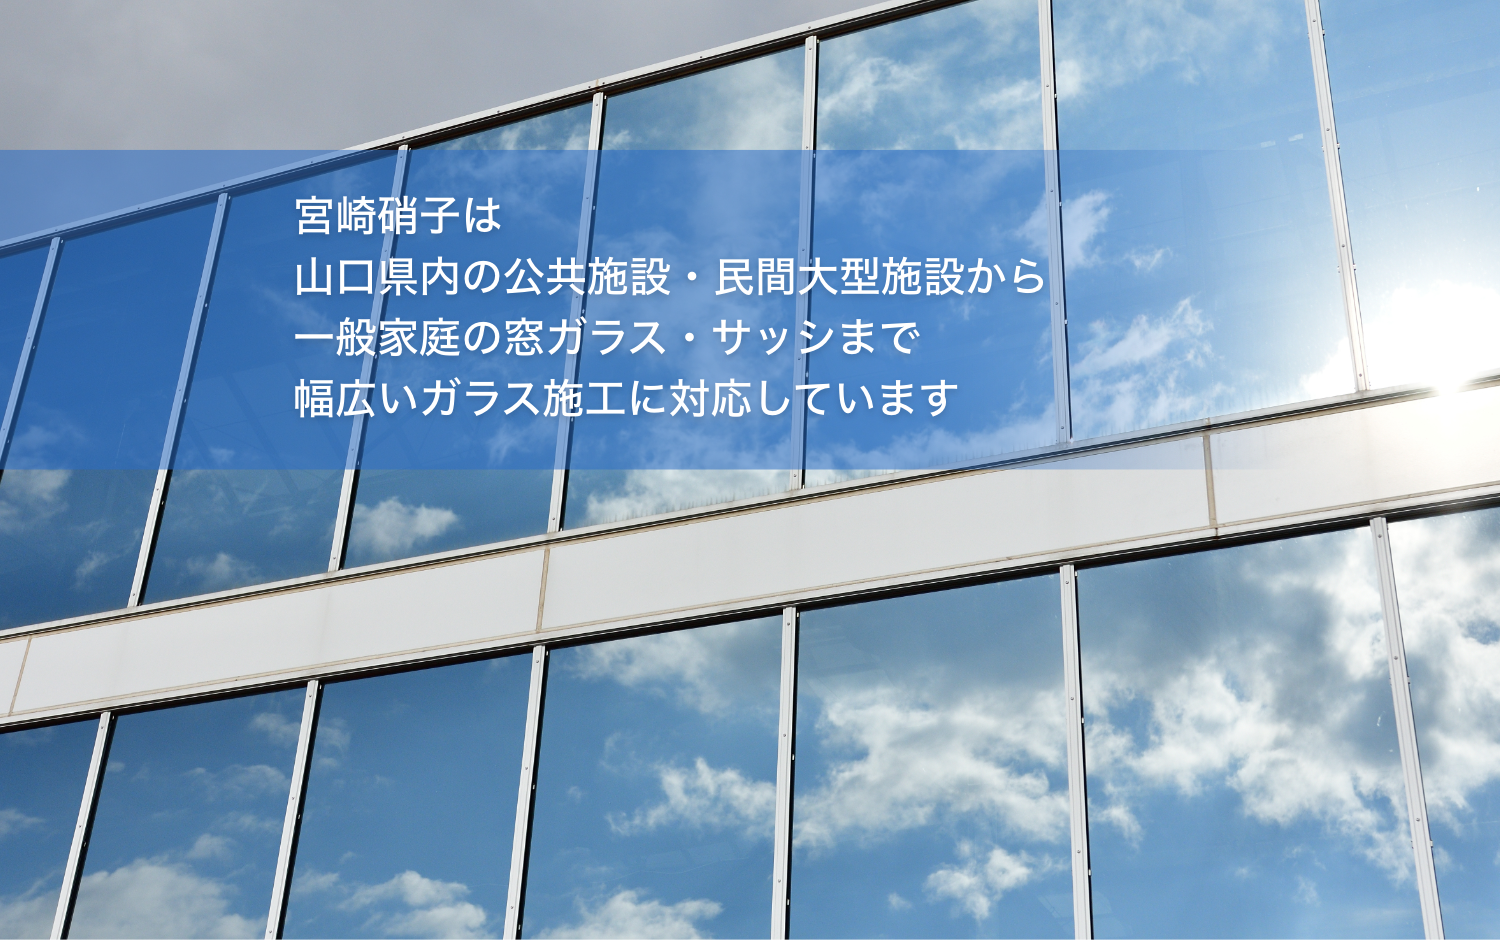 宮崎硝子は山口県内の公共施設・民間大型施設から一般家庭の窓ガラス・サッシまで幅広いガラス施工に対応しています